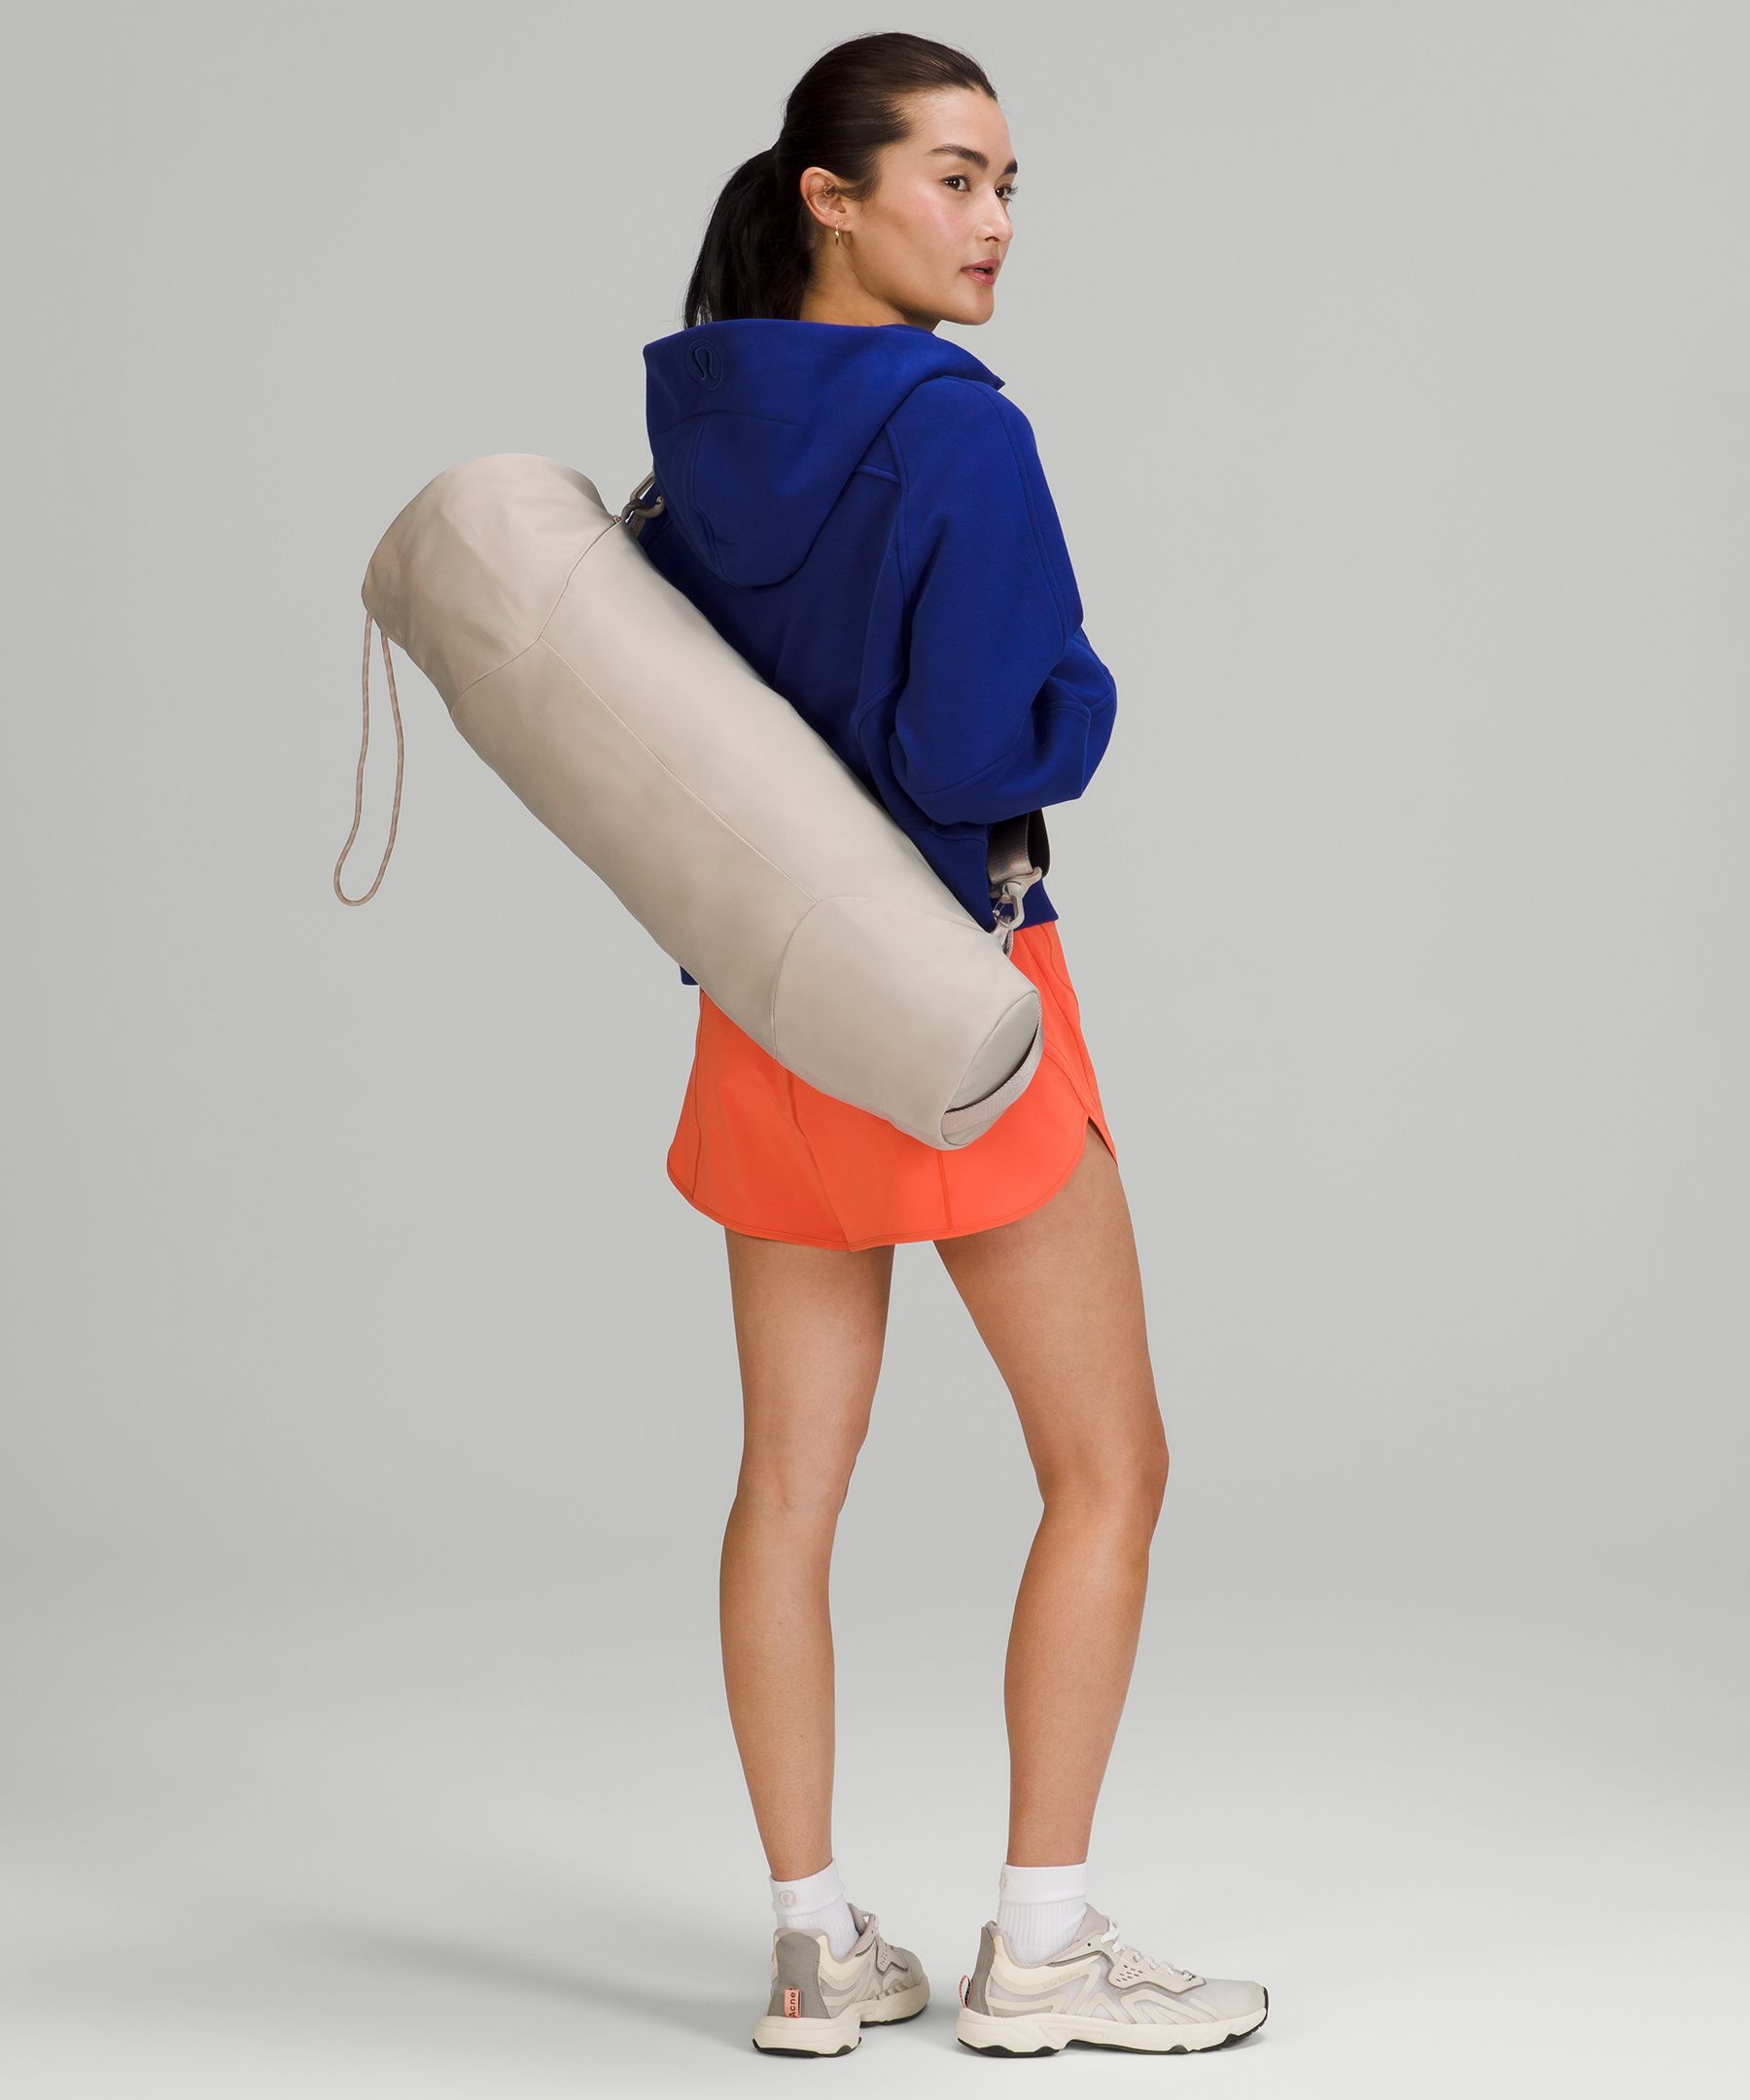 Lululemon Yoga Mat Bag, Sports Equipment, Exercise & Fitness, Exercise Mats  on Carousell